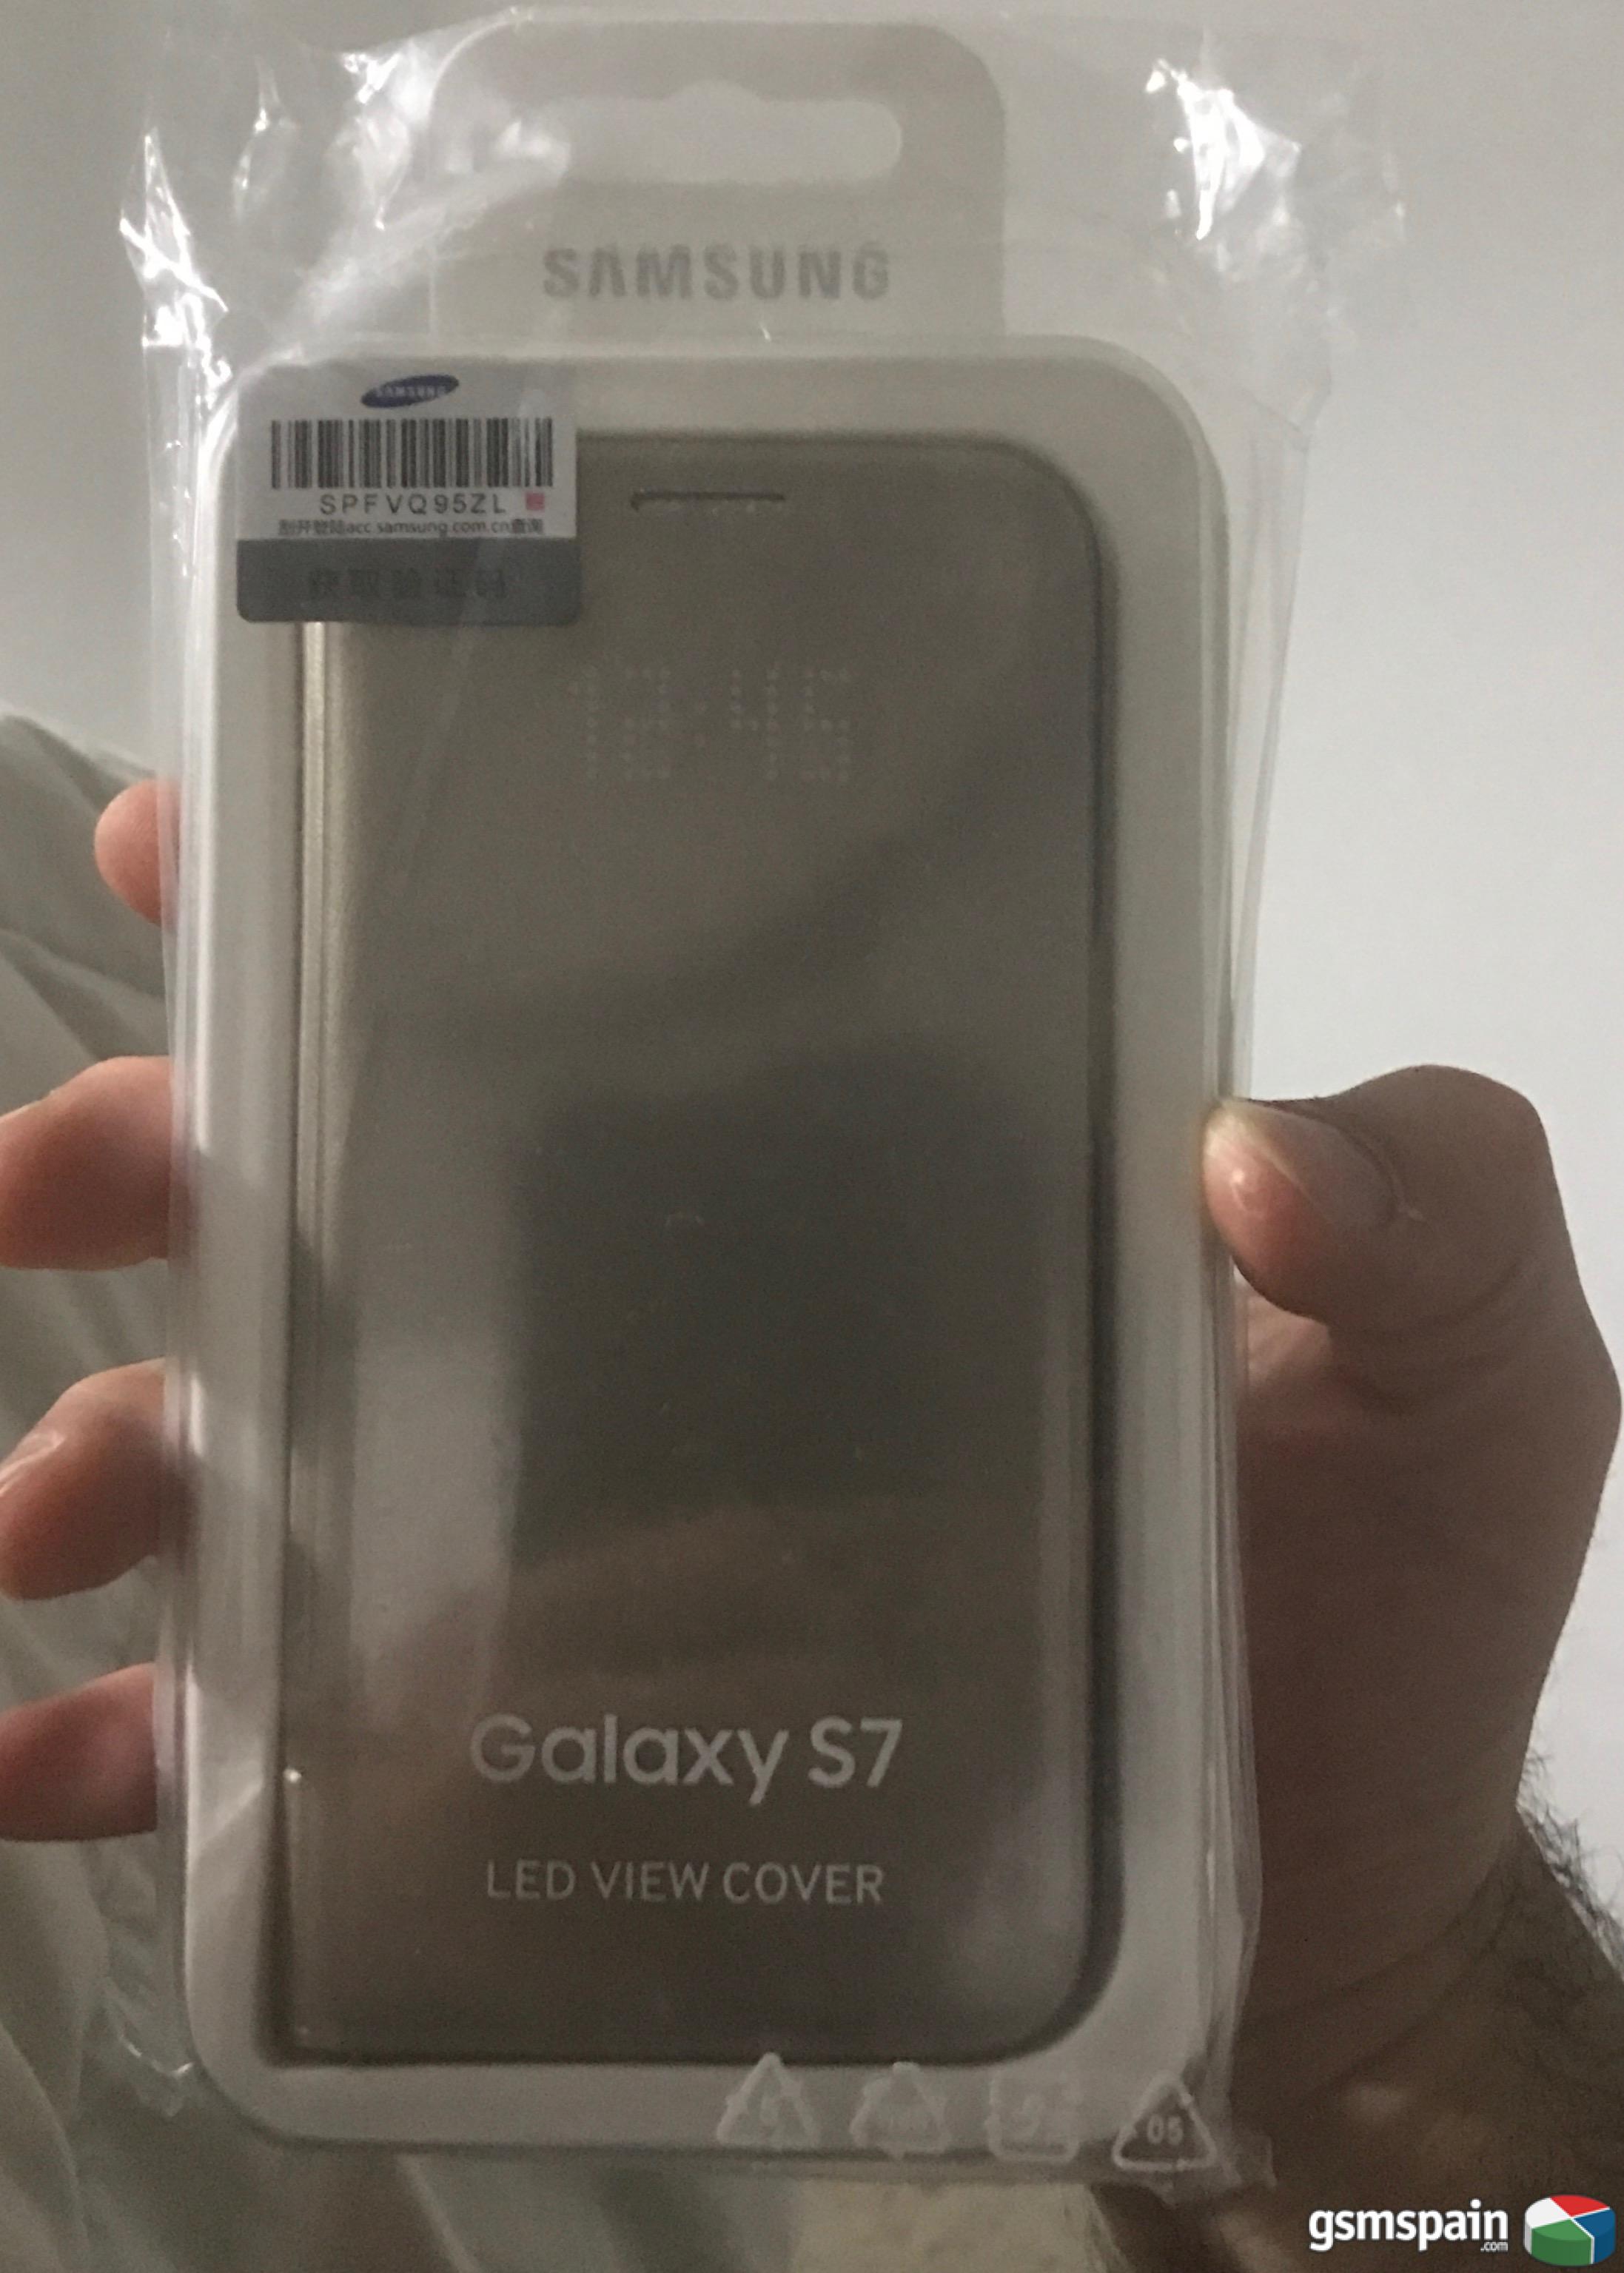 [VENDO] galaxy s7 oro funda oficial led view cover a mitad de precio que en tiendas nueva!